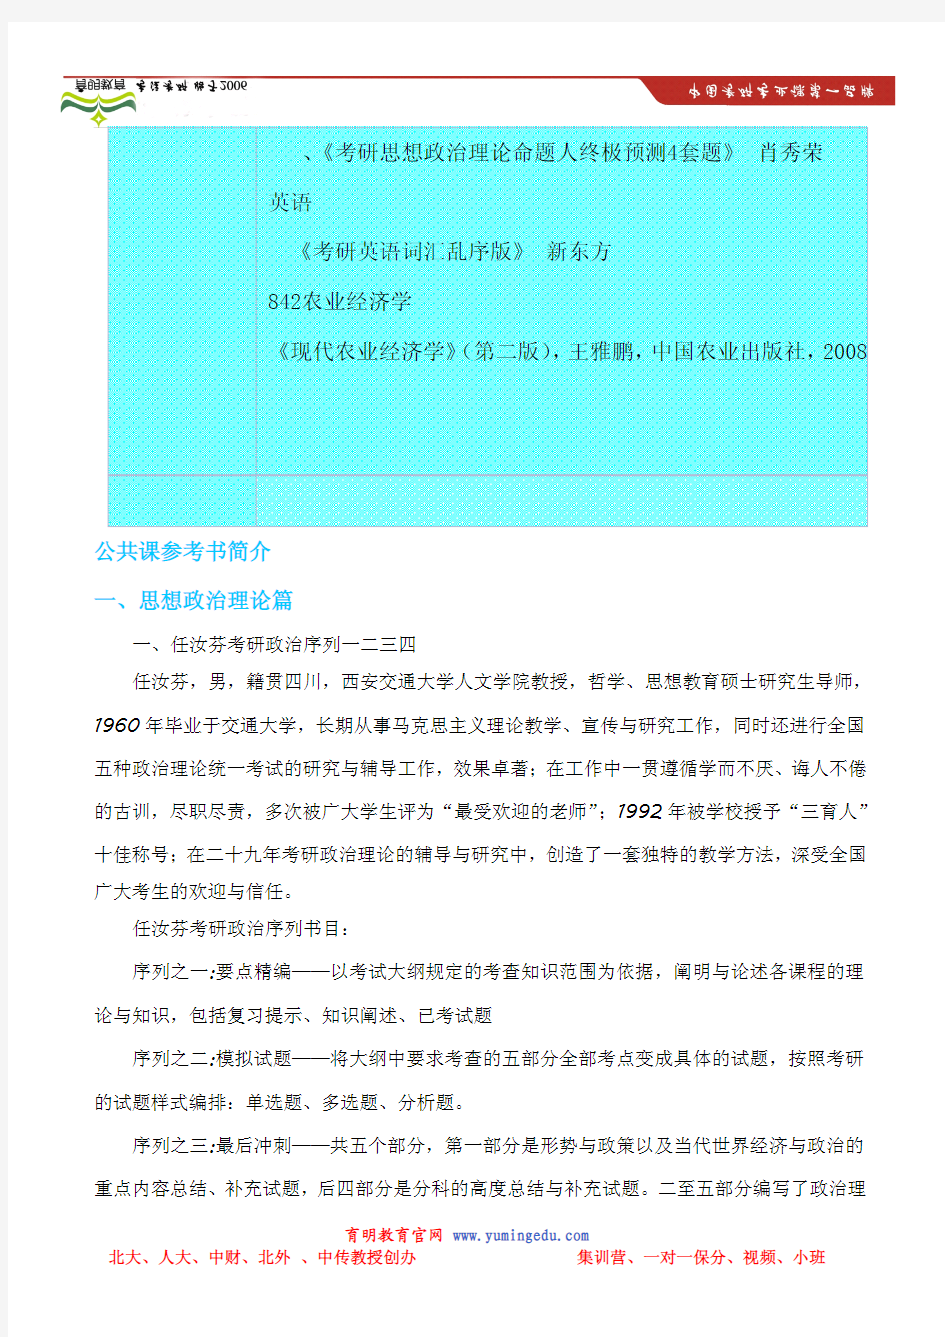 2014年长江大学经济学院农业科技组织与服务(专业学位)招生目录以及考研参考书